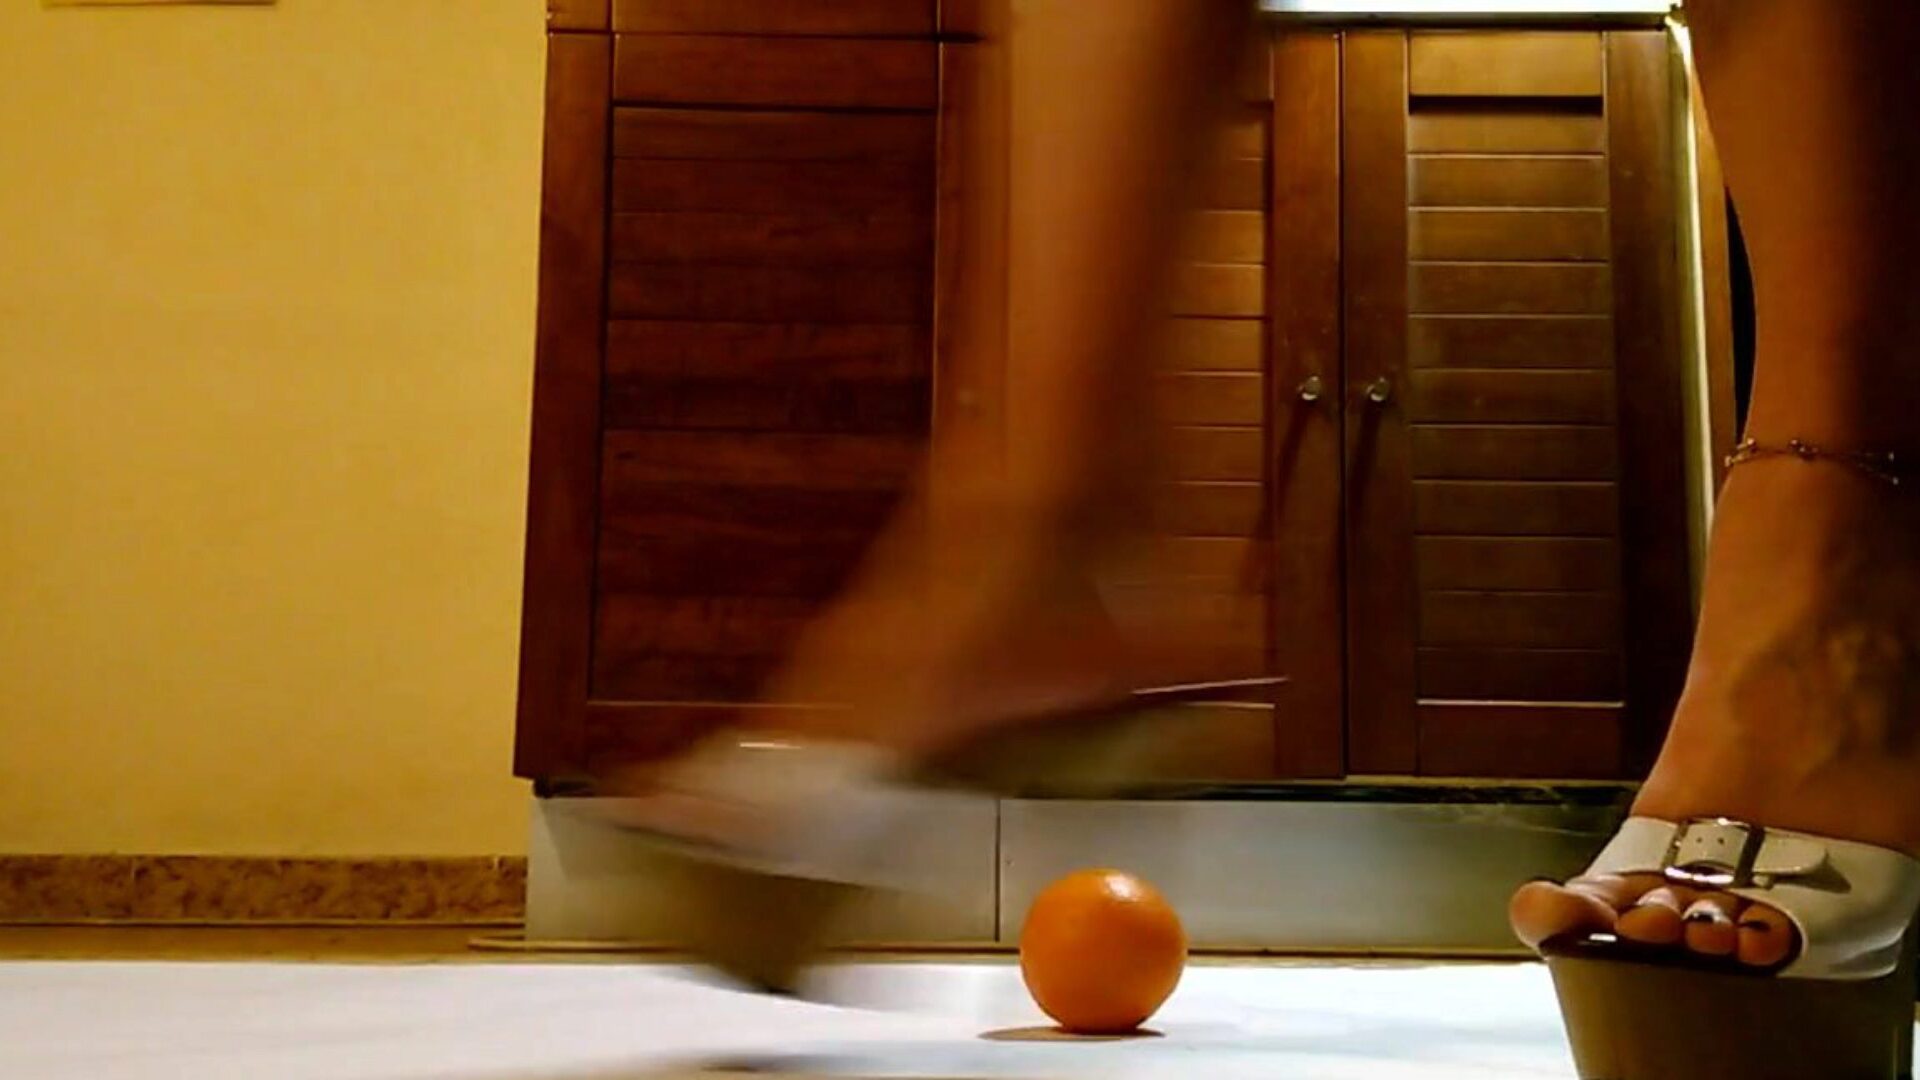 servitrice lege og slå orange i hawt platform højhælede sko servitrice have det sjovt og sparke orange i sexet platform højhælede sko